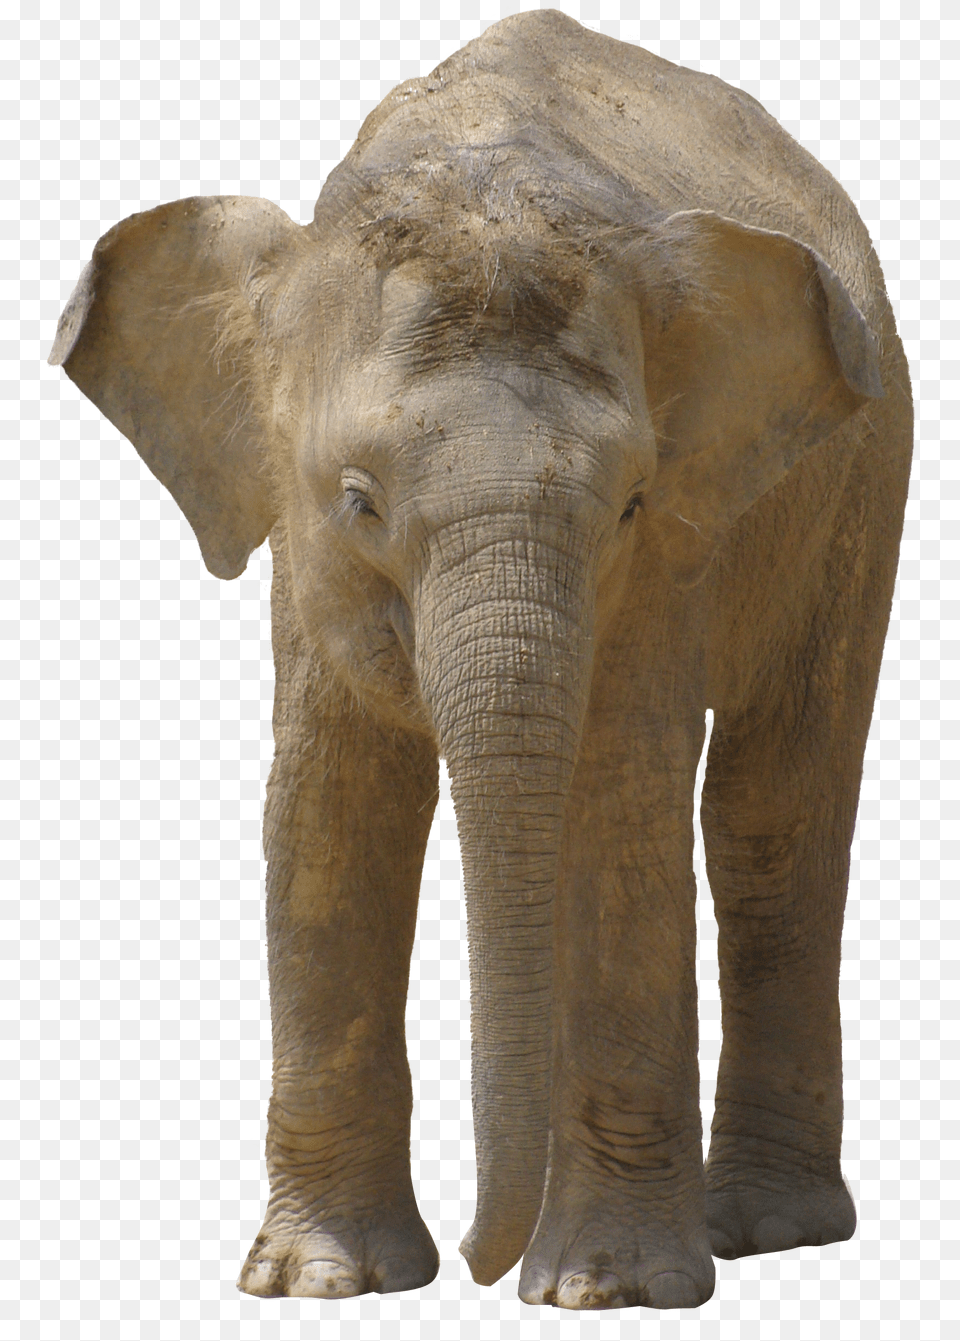 Elephant Elefante, Animal, Mammal, Wildlife Png Image